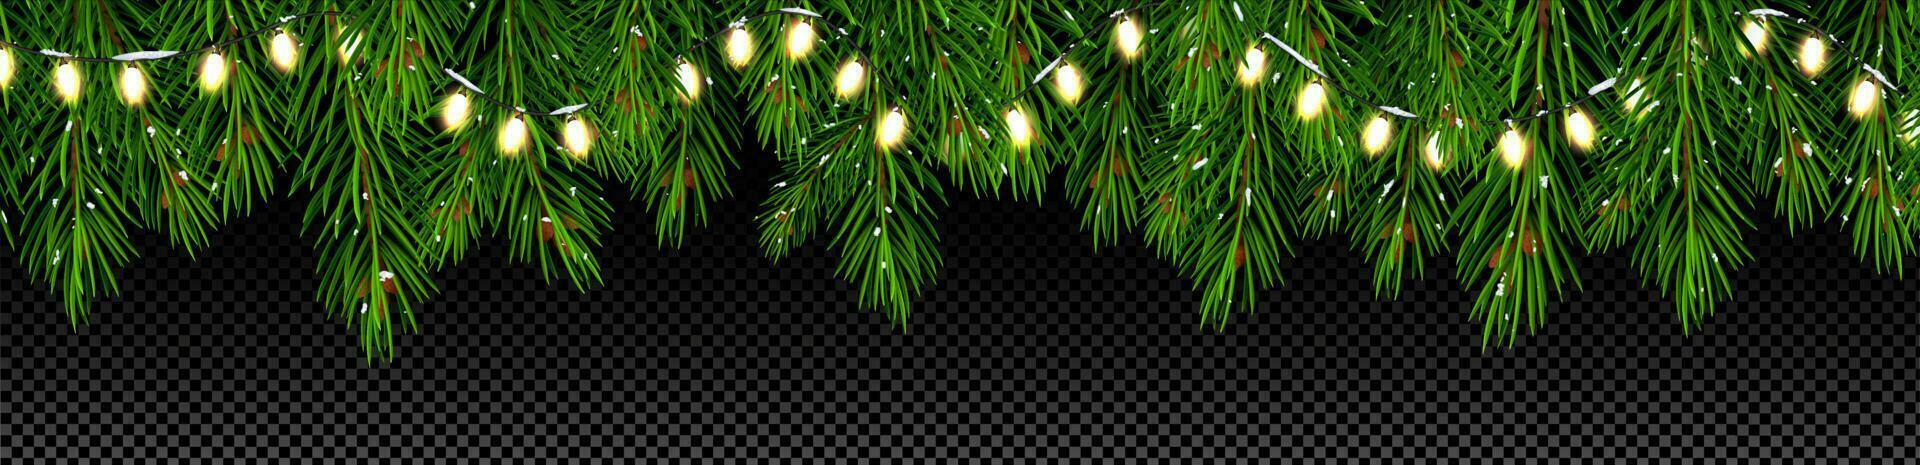 Natale albero rami con luci ghirlanda vettore